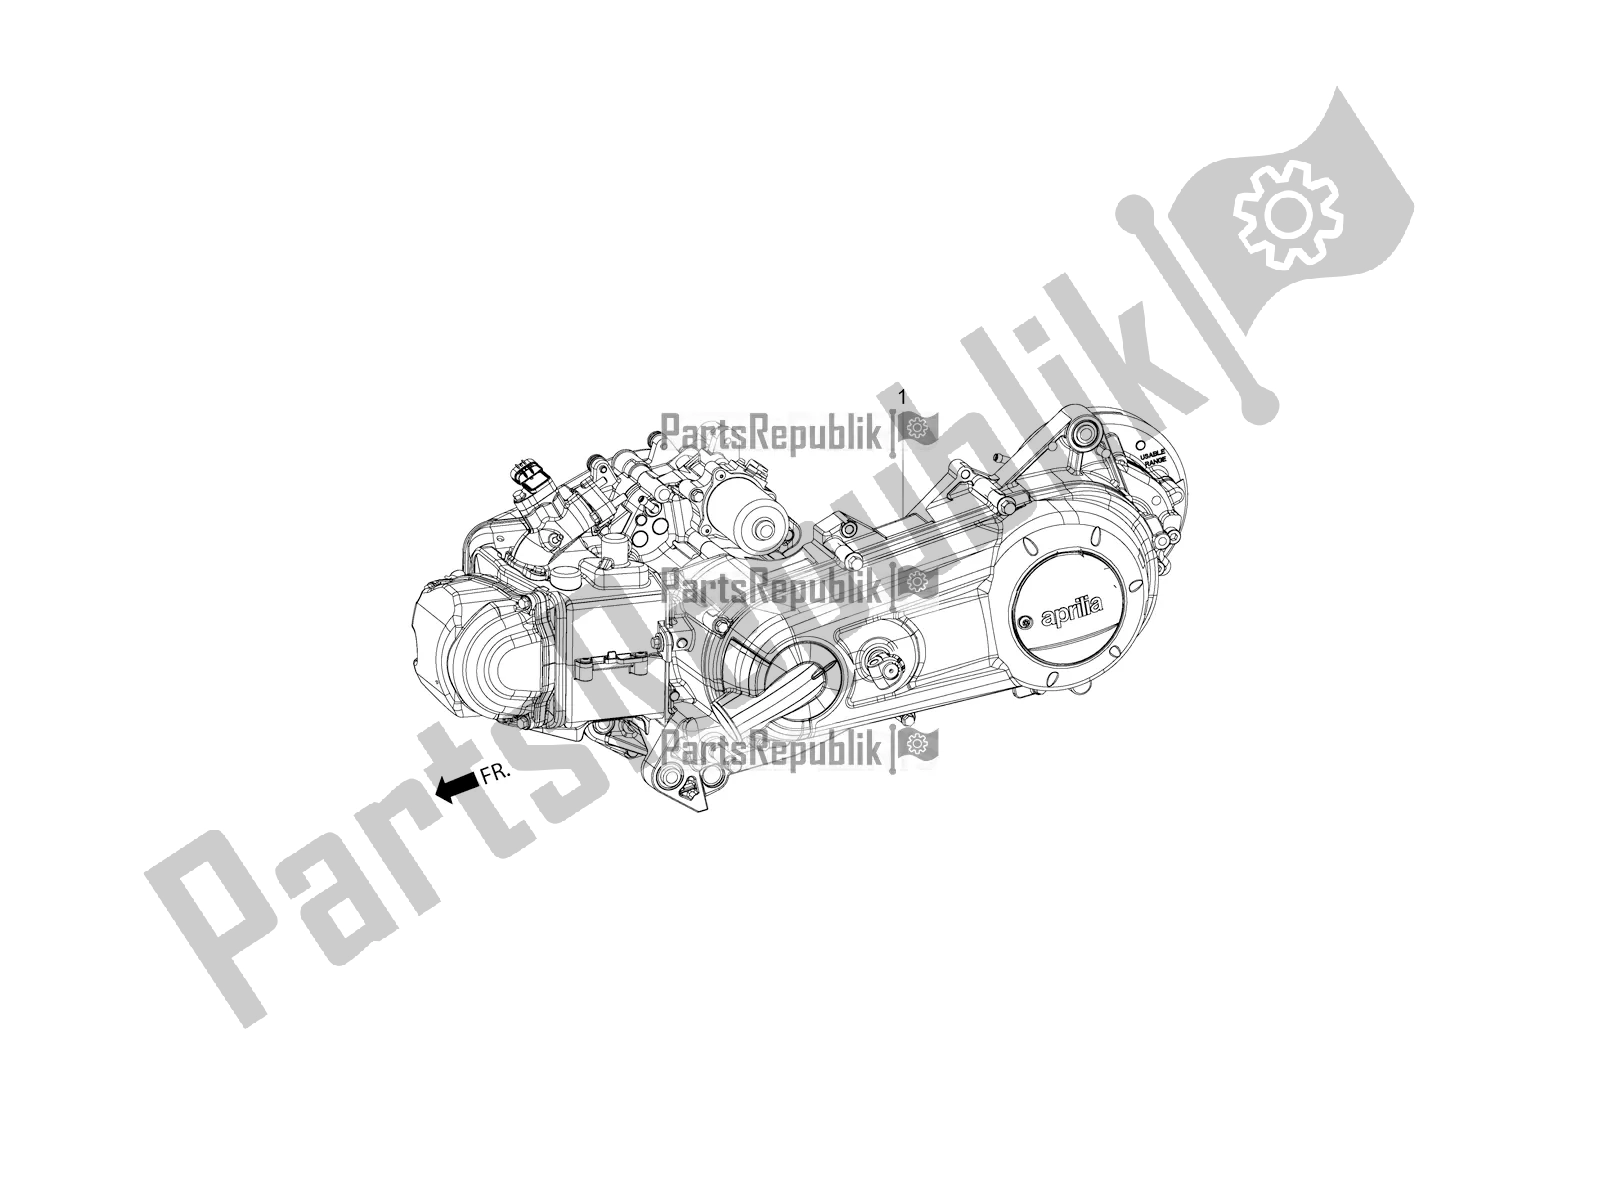 Toutes les pièces pour le Complete Engine du Aprilia SR Motard 150 ABS Apac 2022